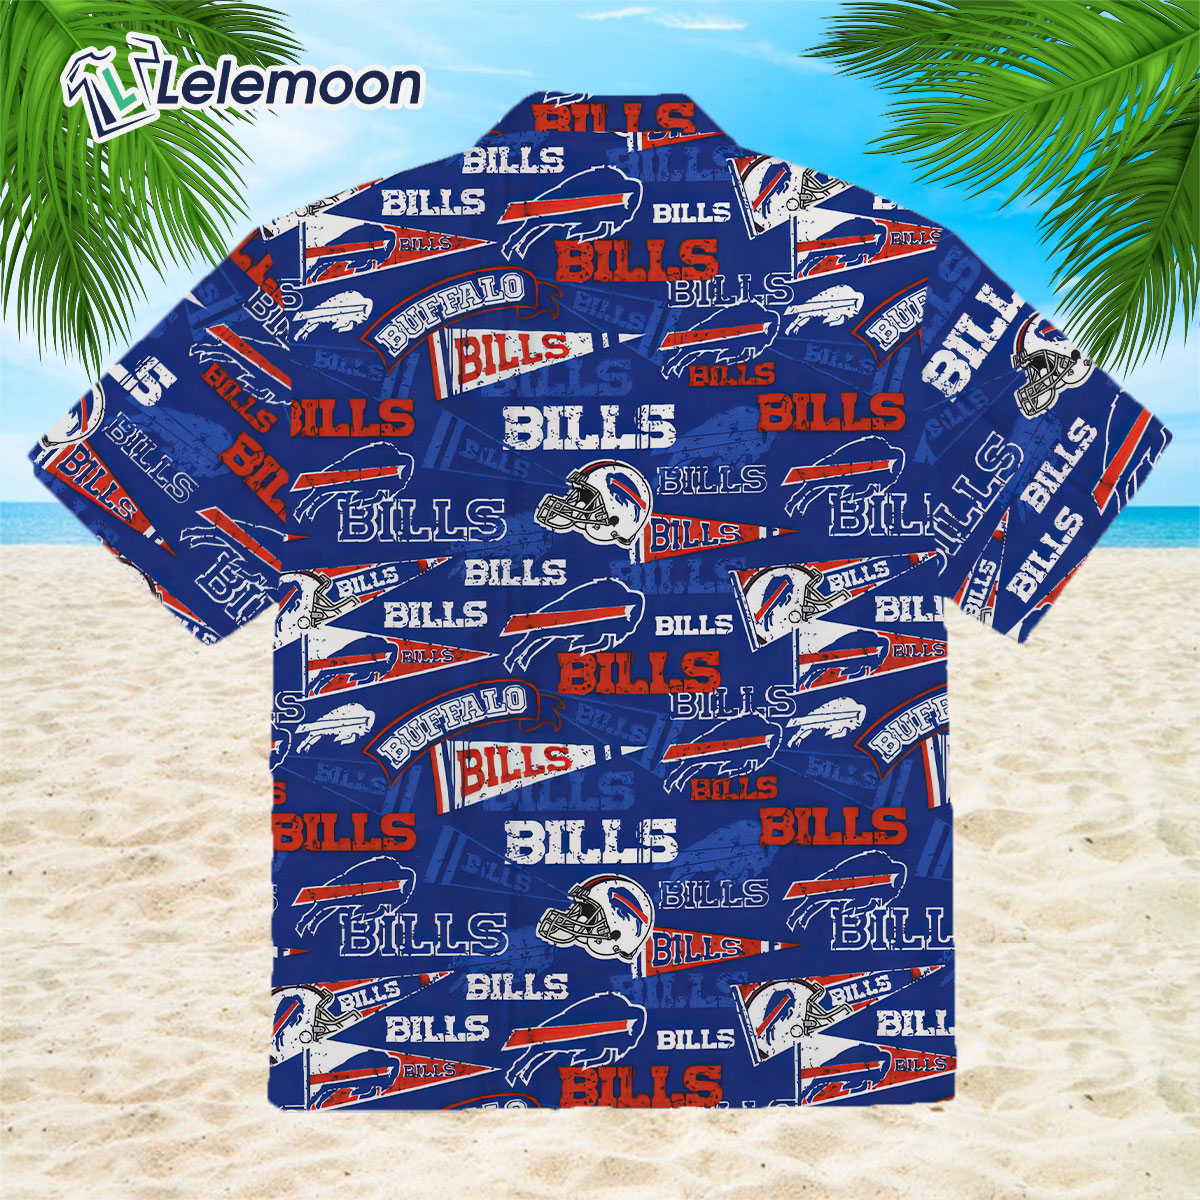 Buffalo Bills Buffalo Sabres Hawaiian Shirt For Men And Women